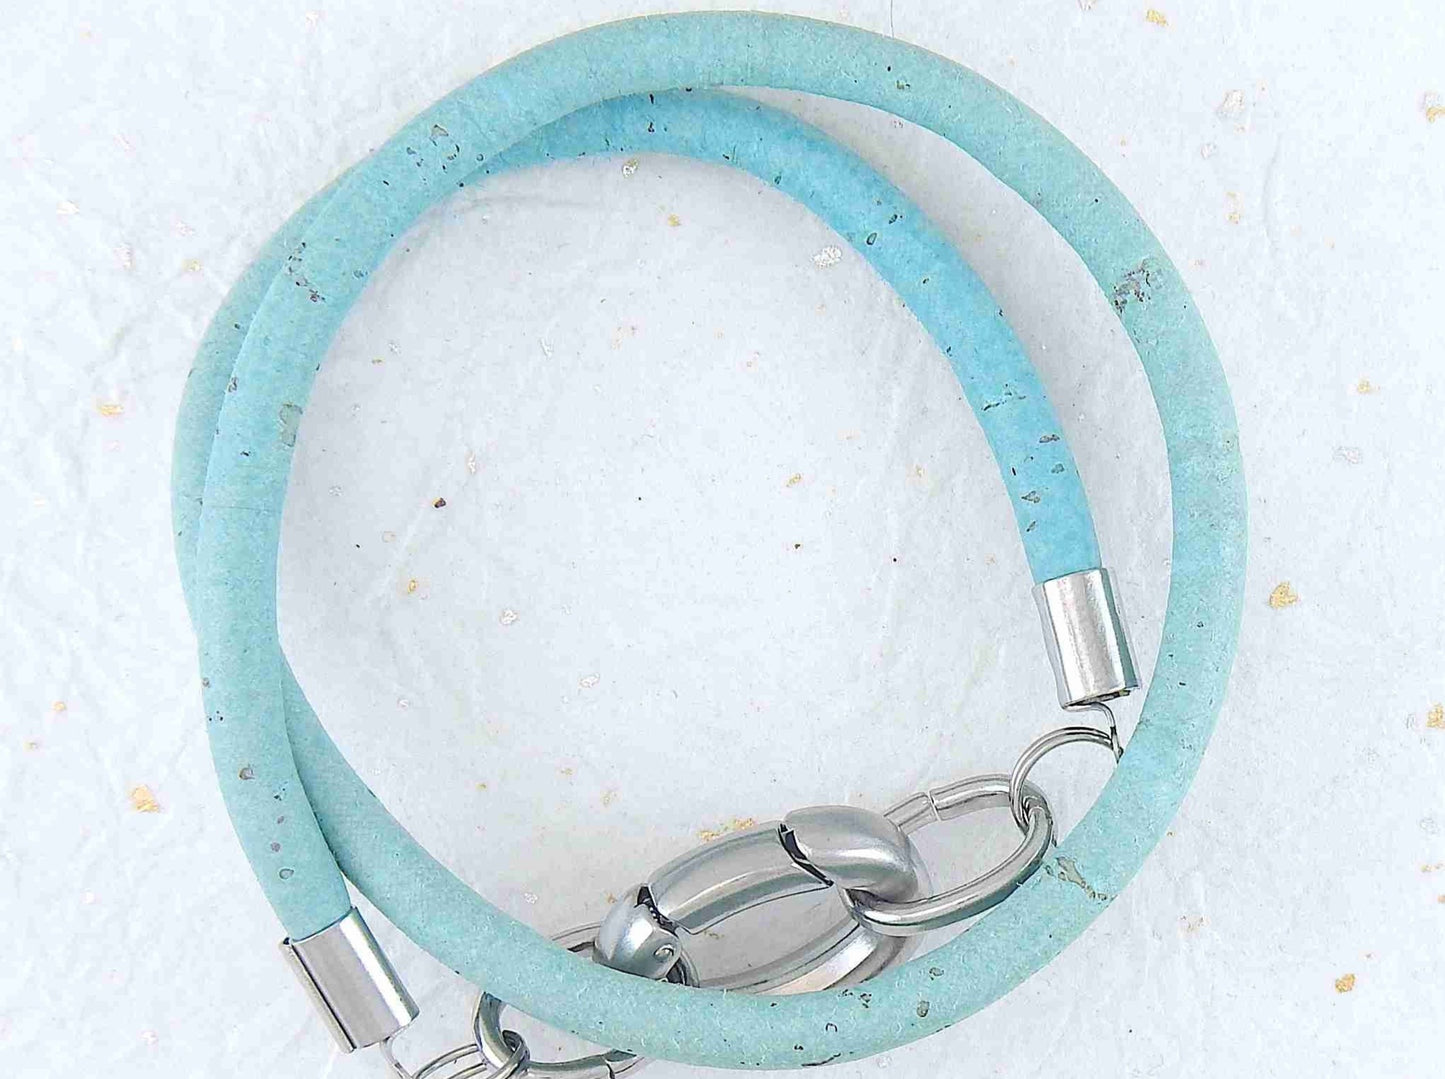 Bracelet 2 tours de liège rond 6mm avec fermoir ovale acier inoxydable en 5 couleurs froides (bleu ciel, bleu marine, turquoise-argent, turquoise-rouge, vert)